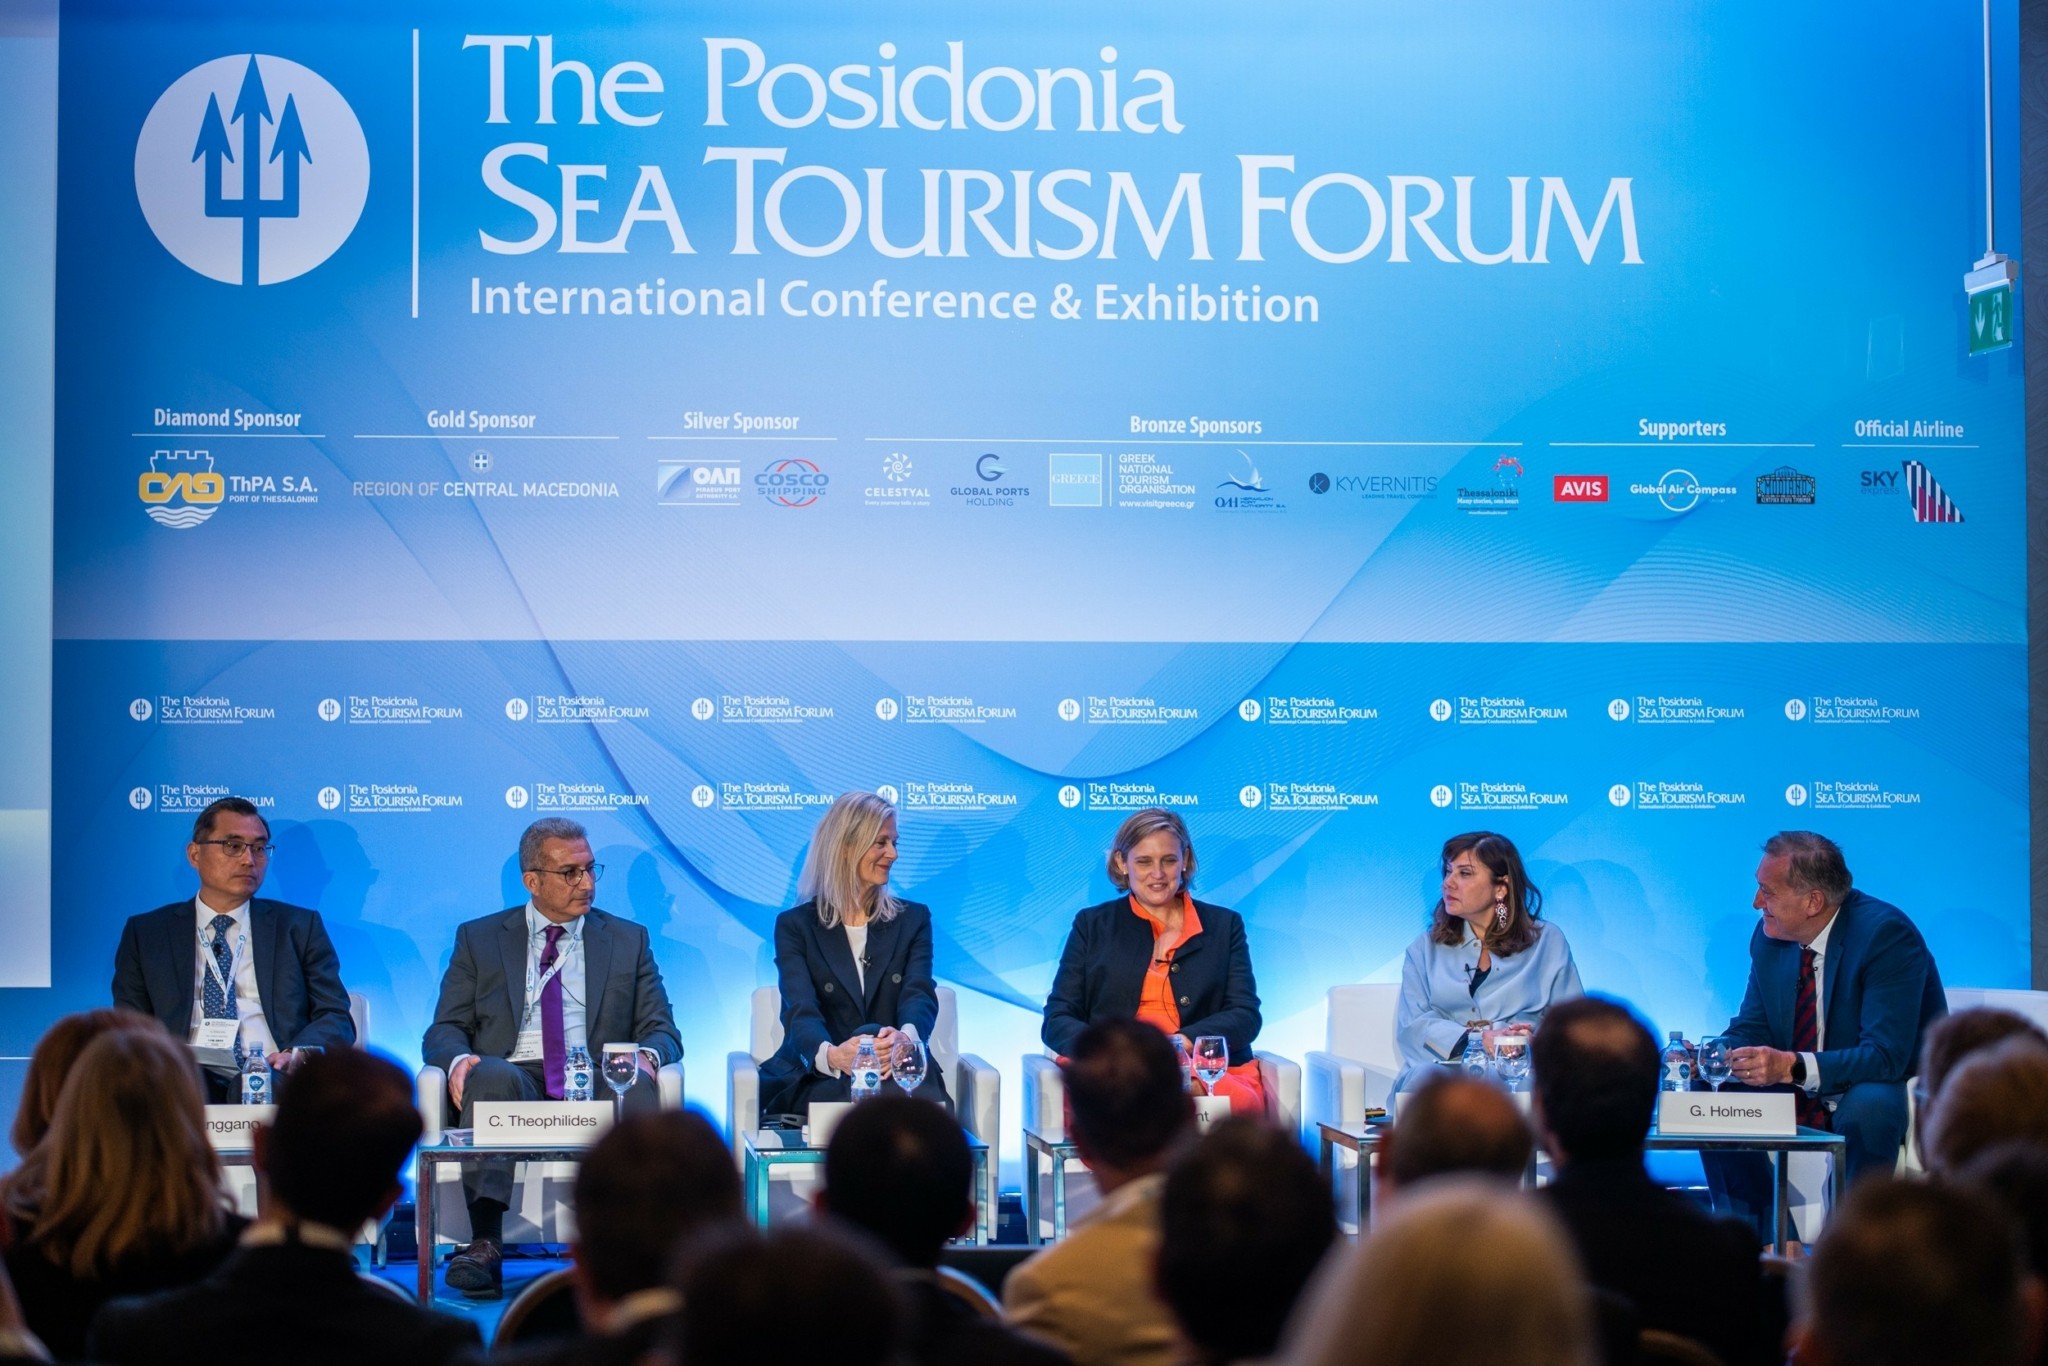 ΟΛΠ: Ενεργή συμμετοχή στο 7o Posidonia Sea Tourism Forum